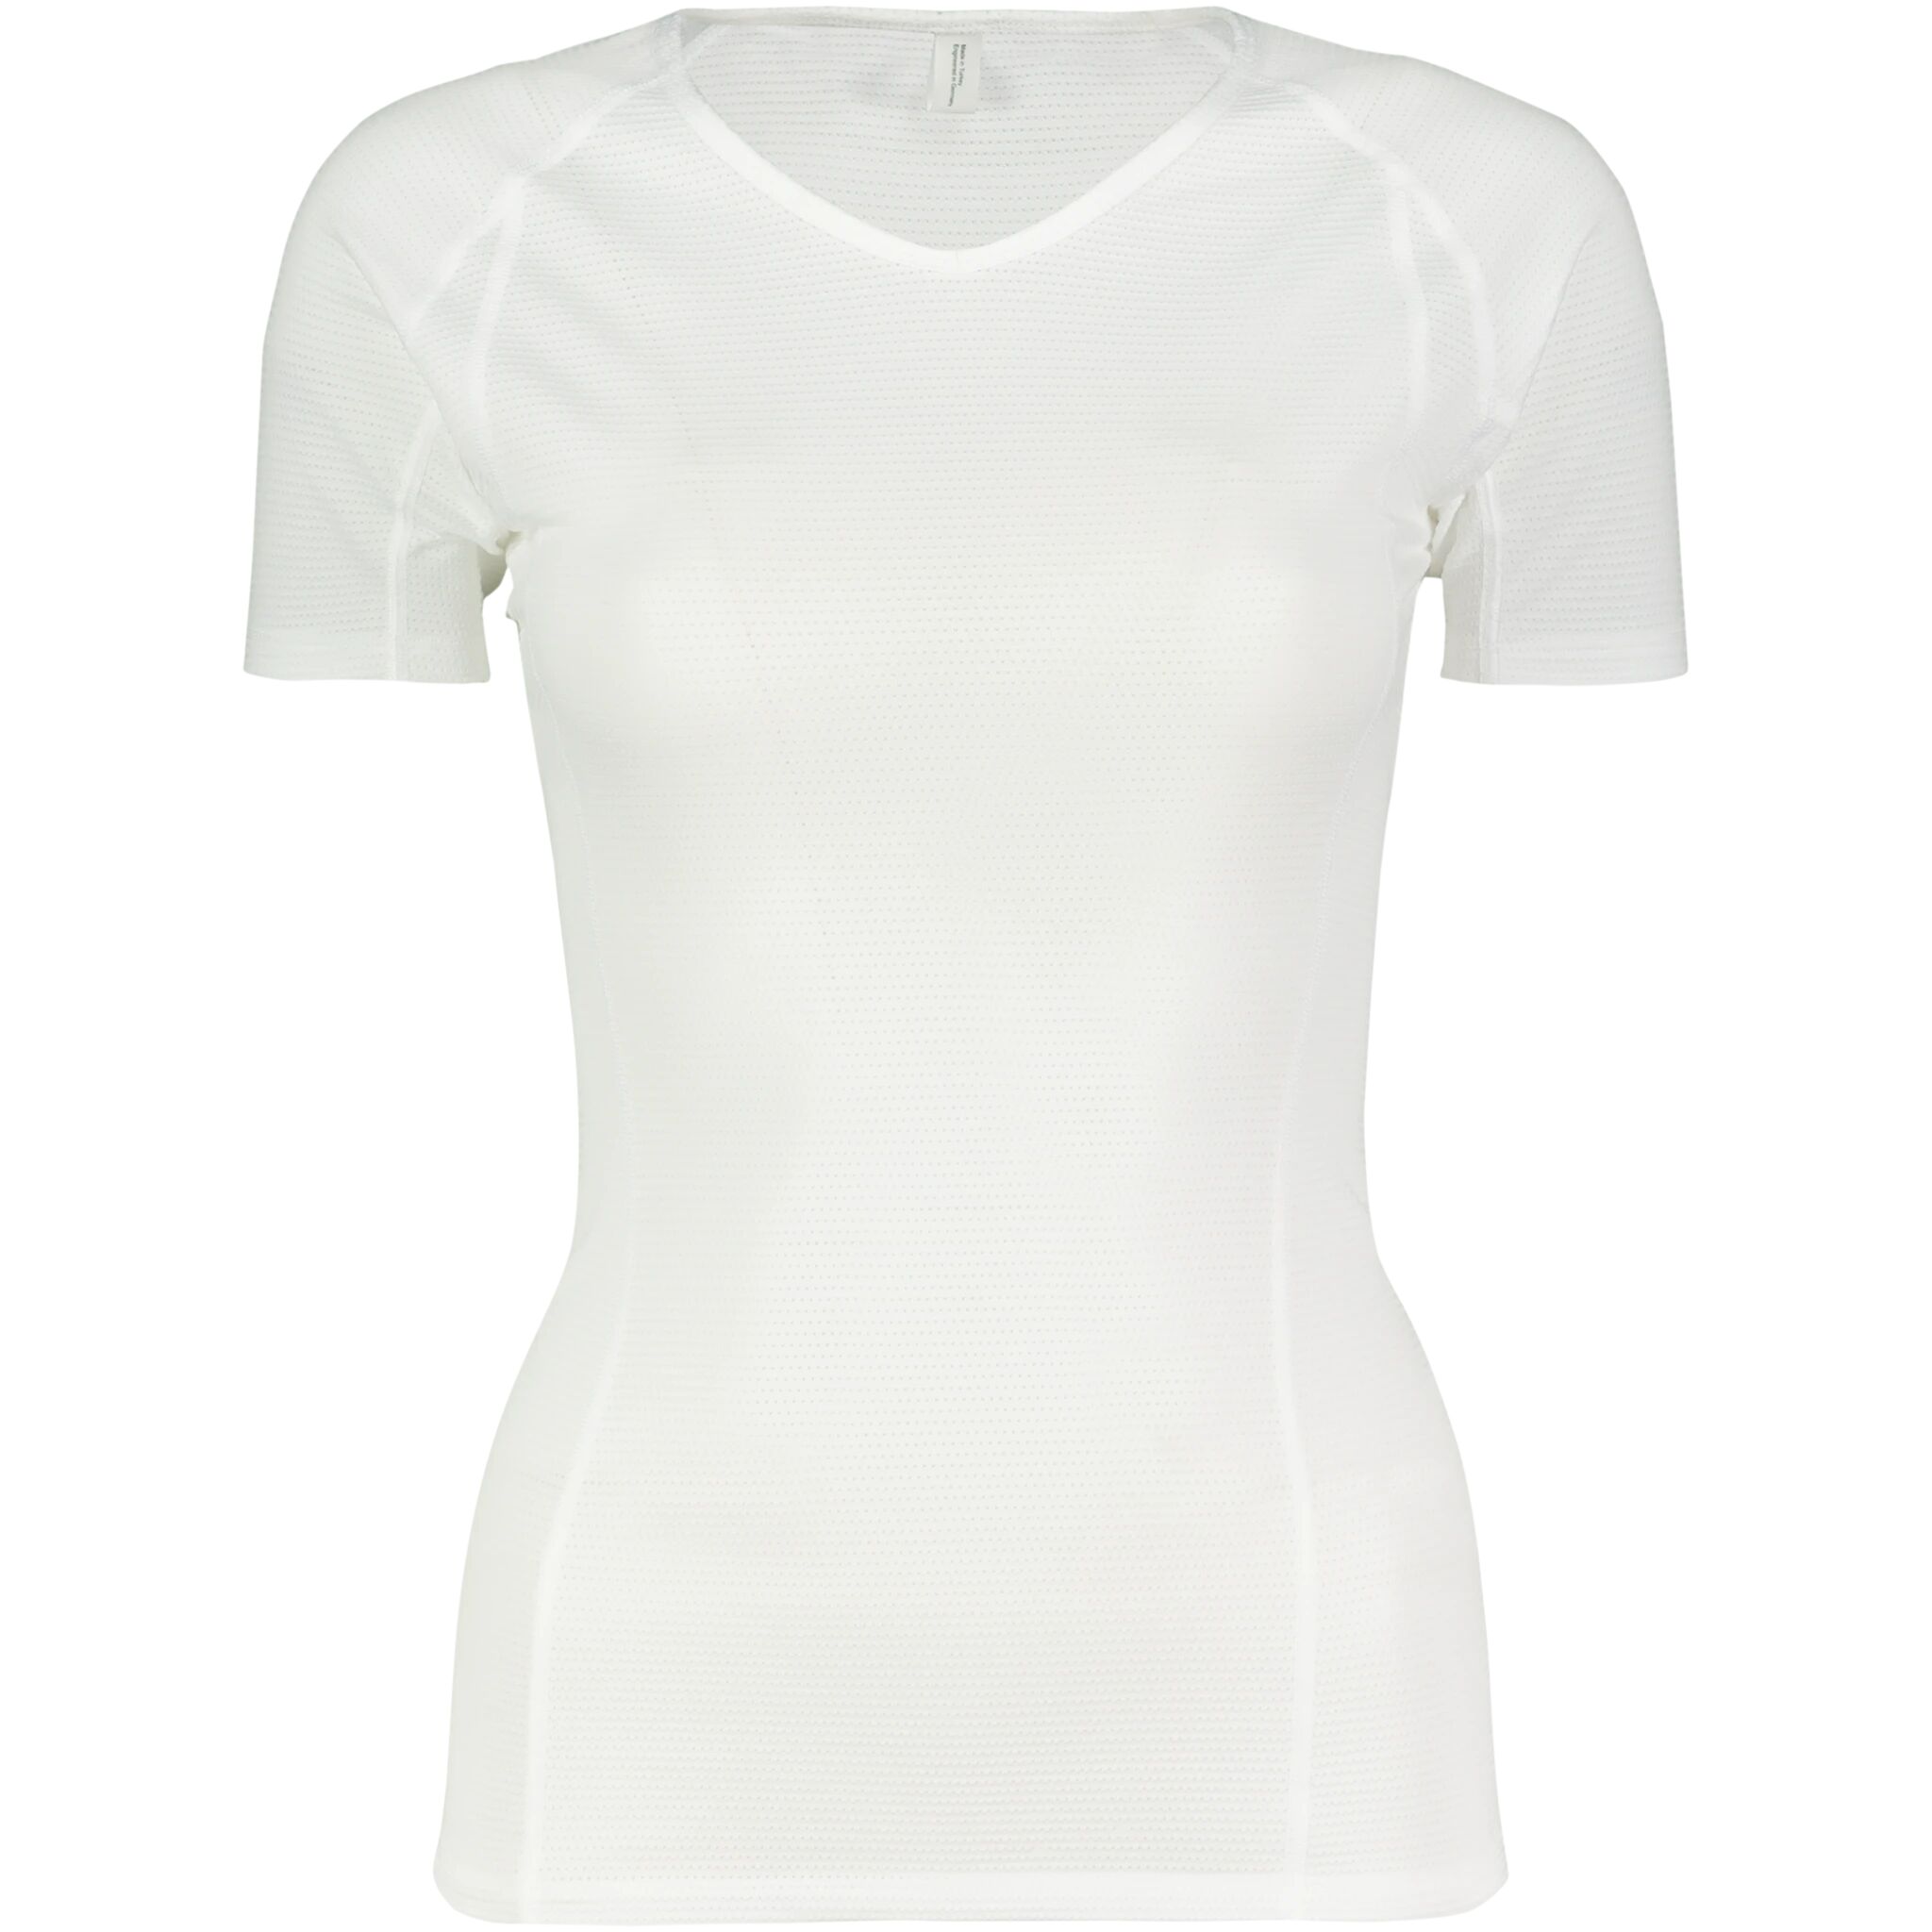 GORE Wear BL Shirt 20, undertrøye, dame XL-42 White